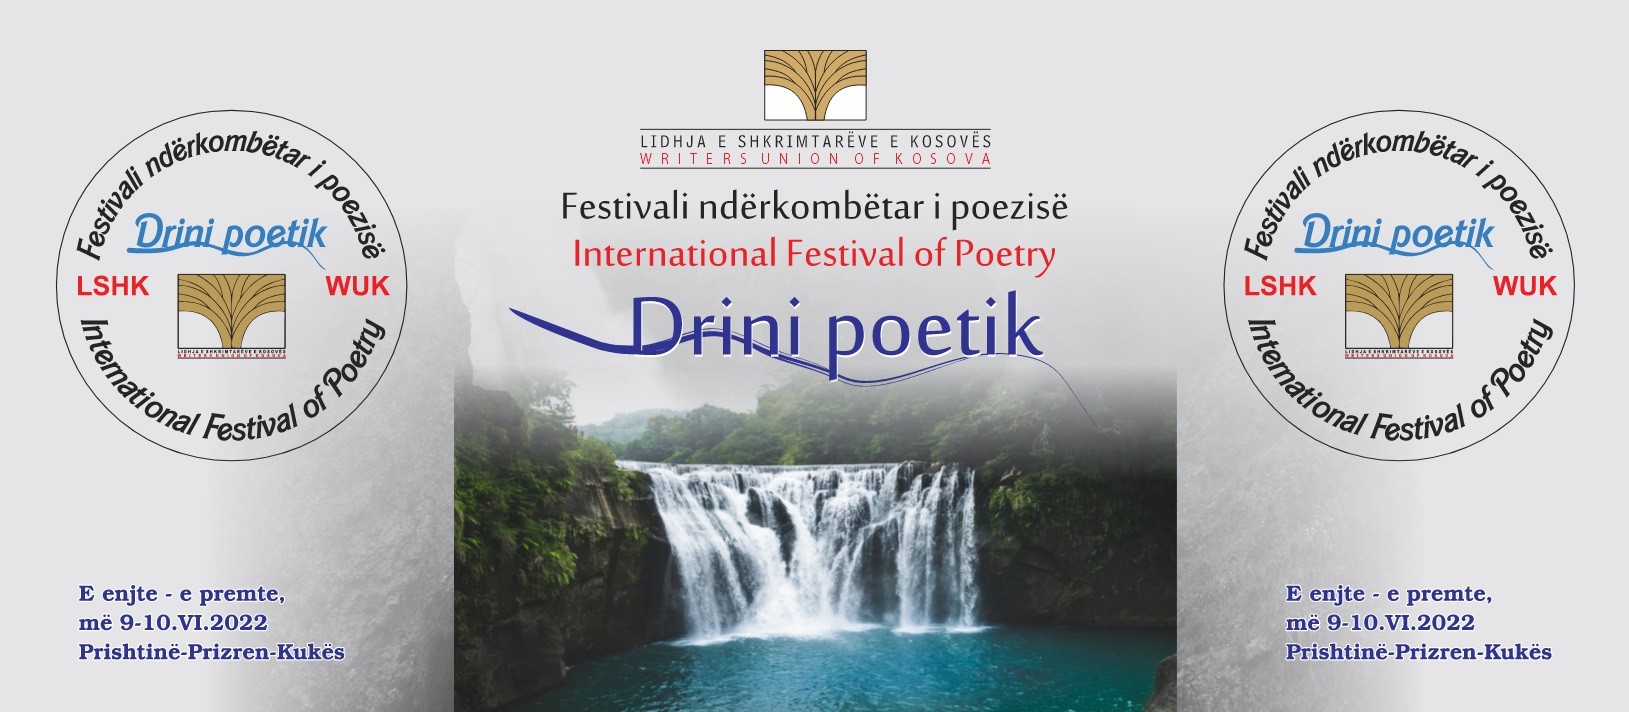 Sot fillon festivali ndërkombëtar i poezisë "Drini poetik"